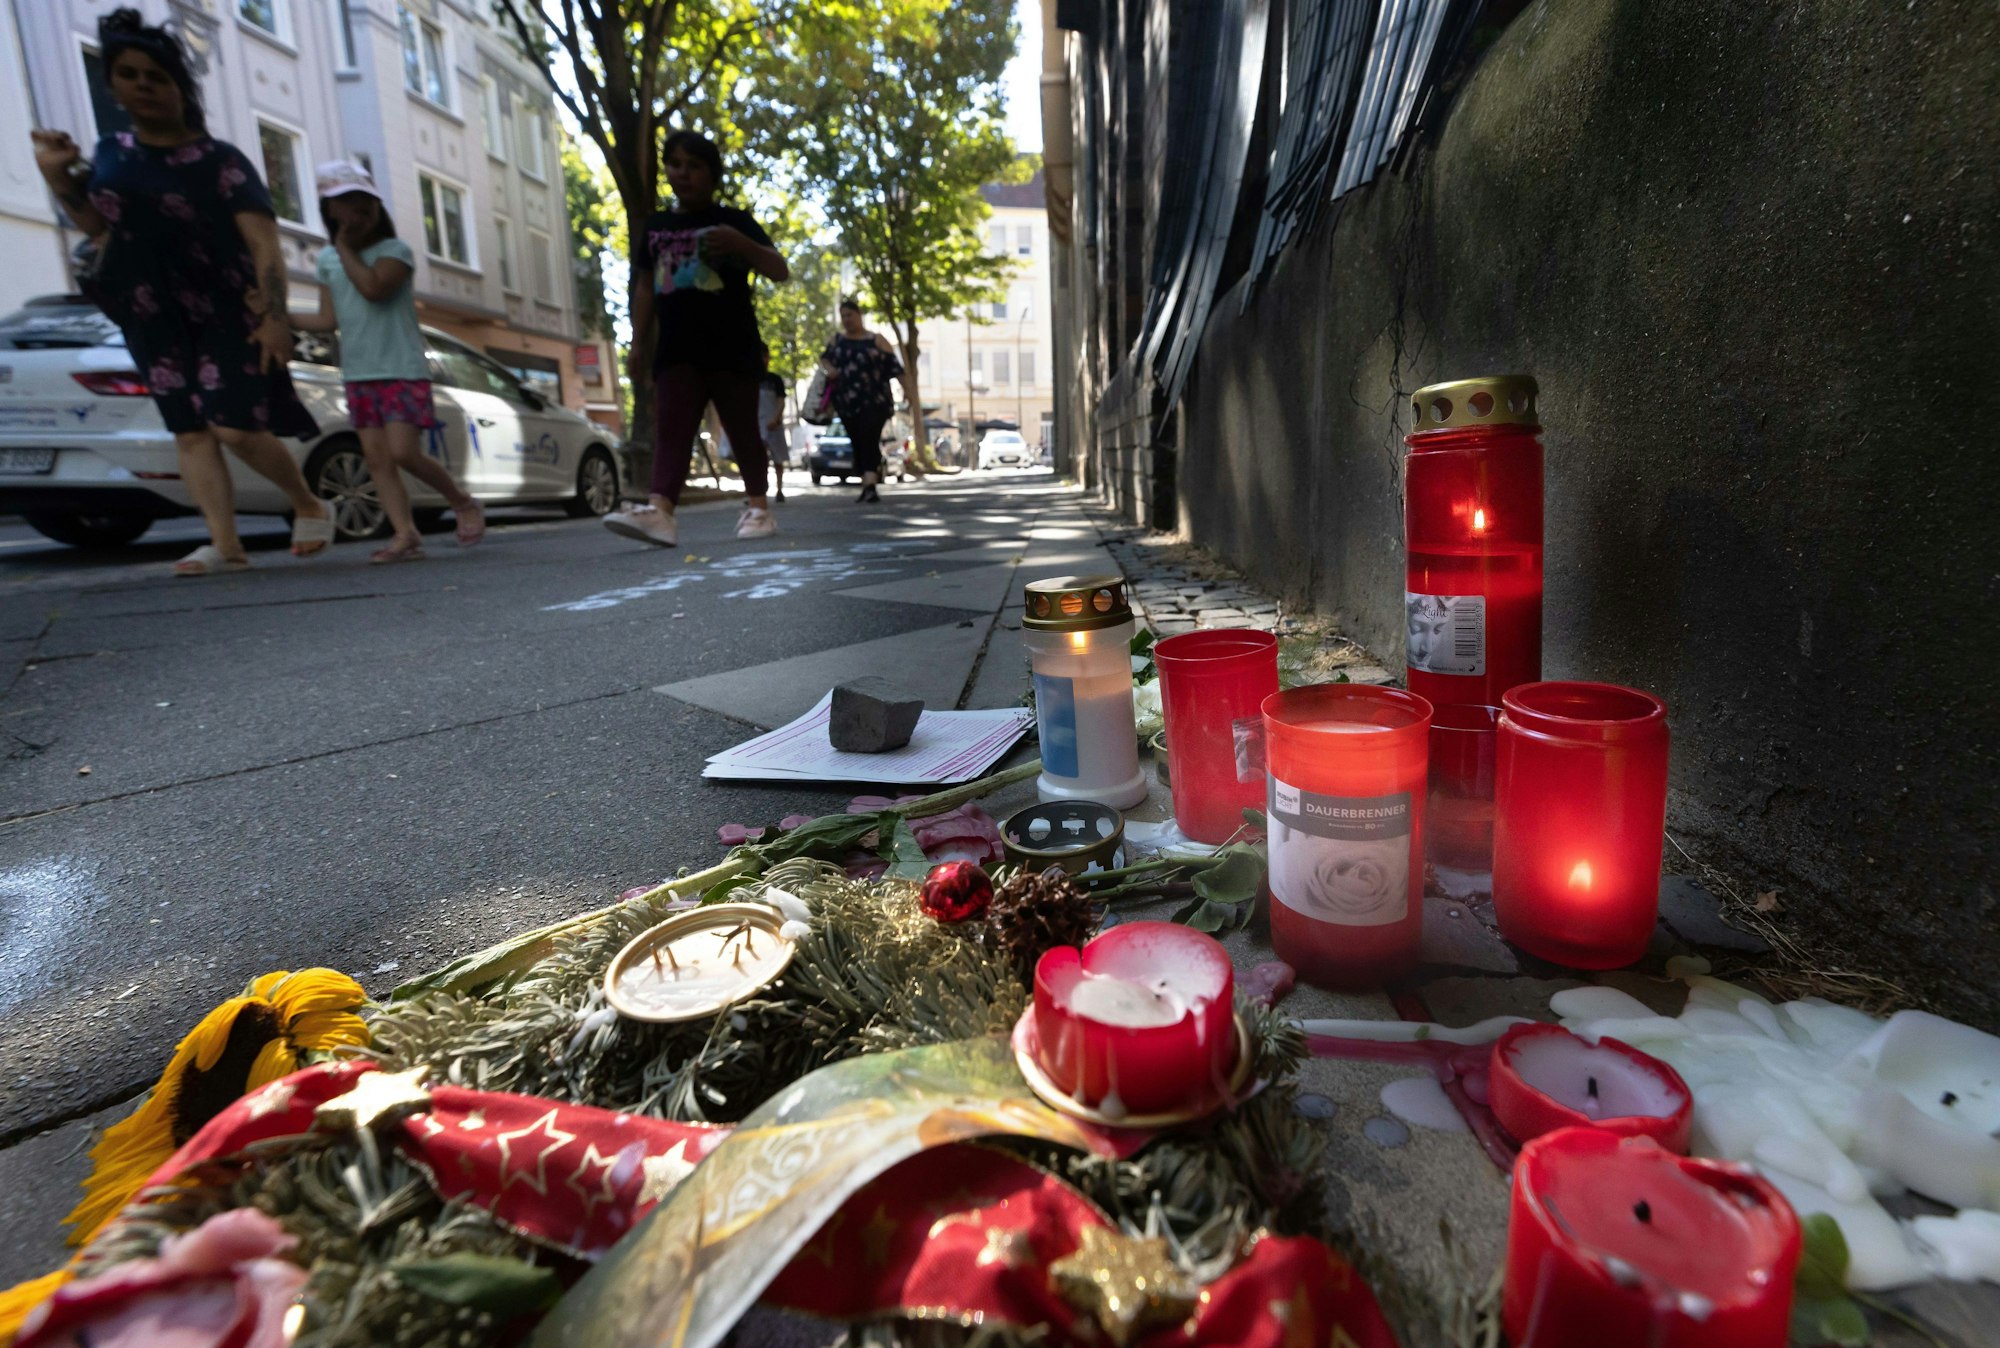 10.08.2022, Nordrhein-Westfalen, Dortmund: Trauer-Blumen und Kerzen erinnern an den Tod eines 16-jährigen Jugendlichen. Auch Tage nach den tödlichen Schüssen aus einer Polizei-Maschinenpistole auf einen 16-Jährigen wird heftig über den Fall diskutiert. Foto: Dieter Menne/dpa +++ dpa-Bildfunk +++